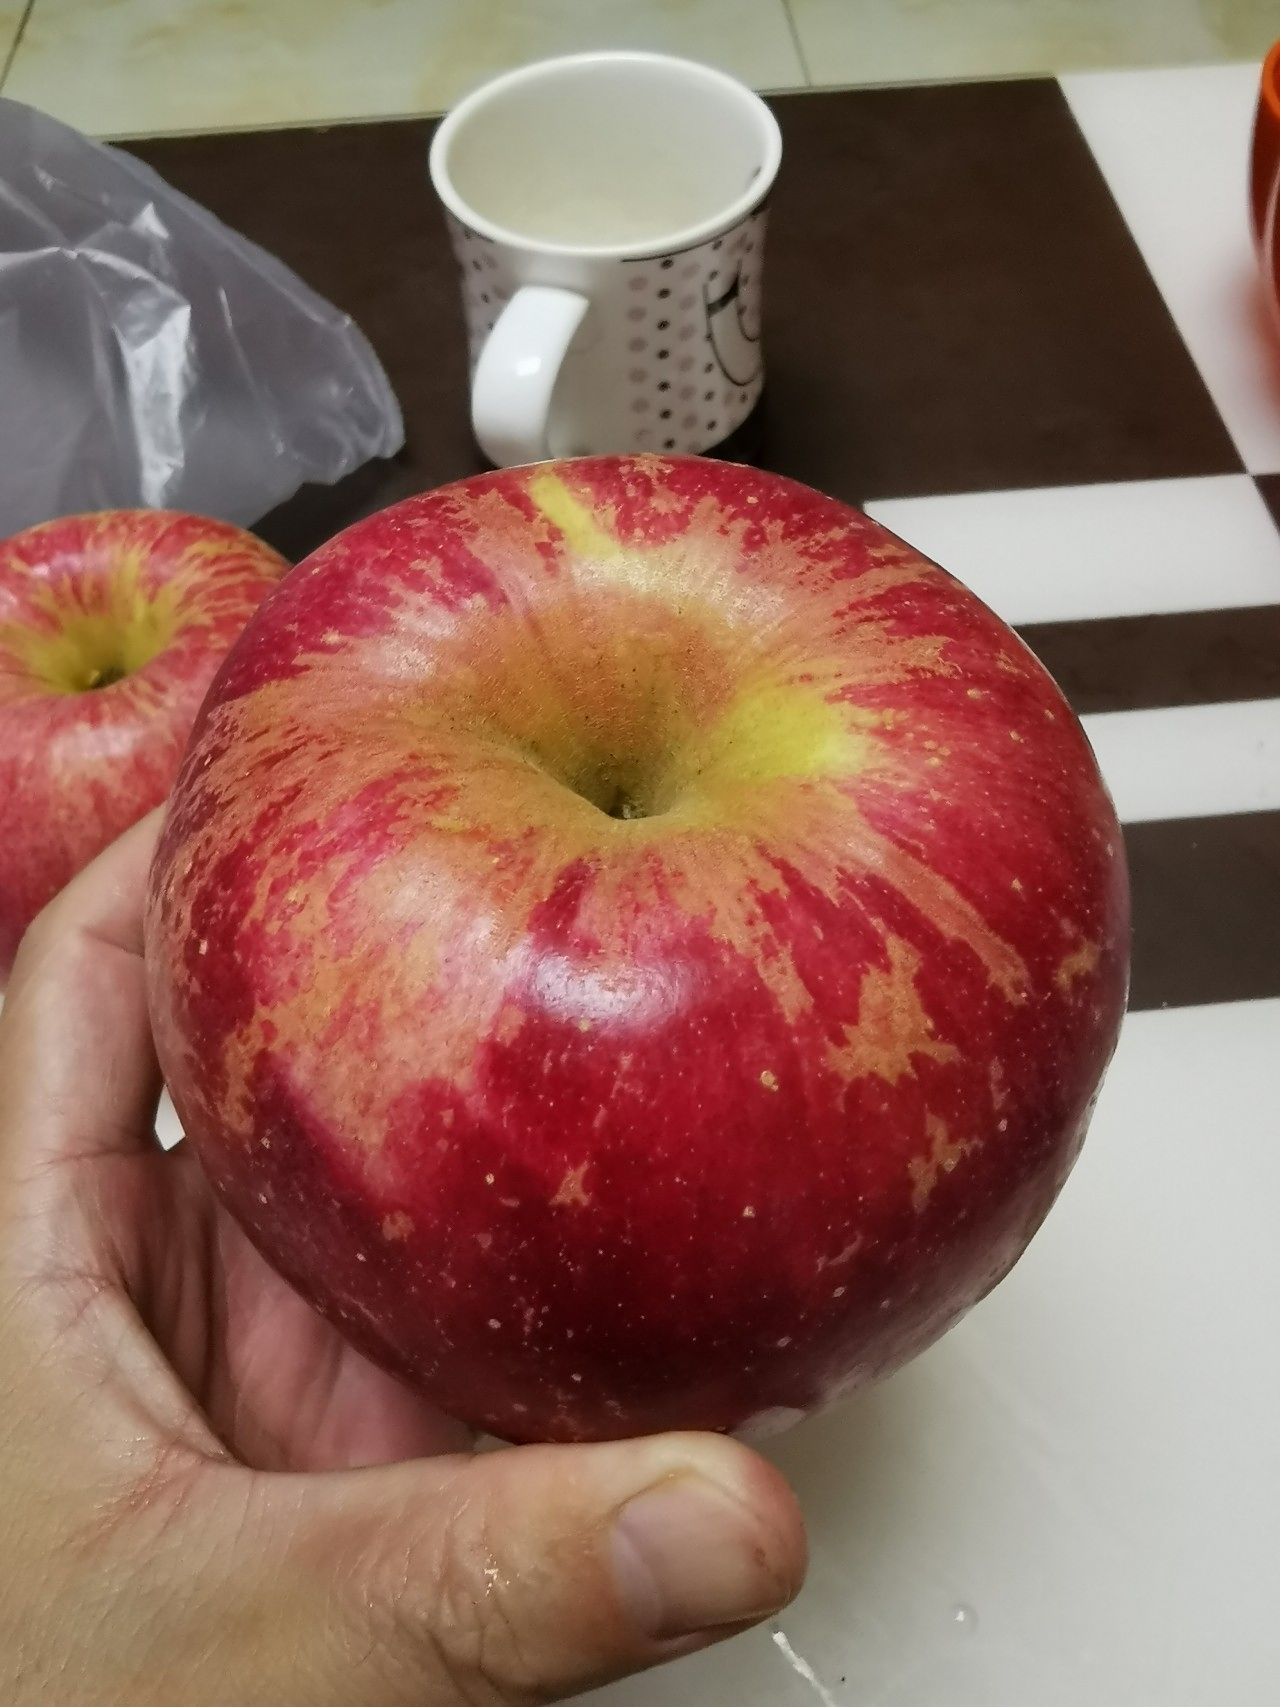 大苹果好大呀一个有一斤